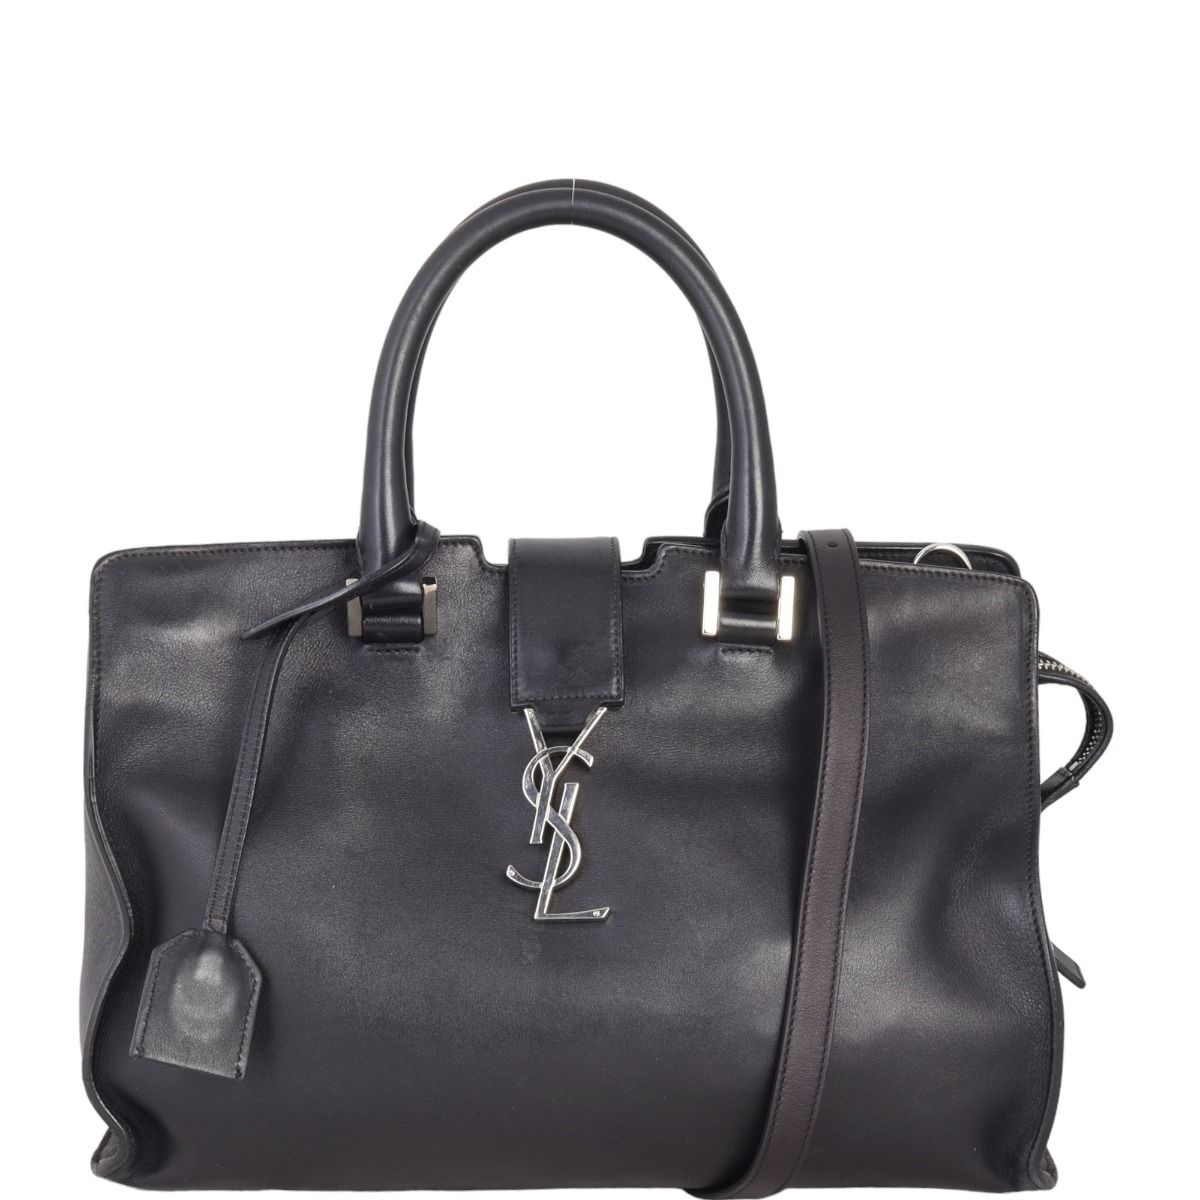 Monogram Cabas leather handbag